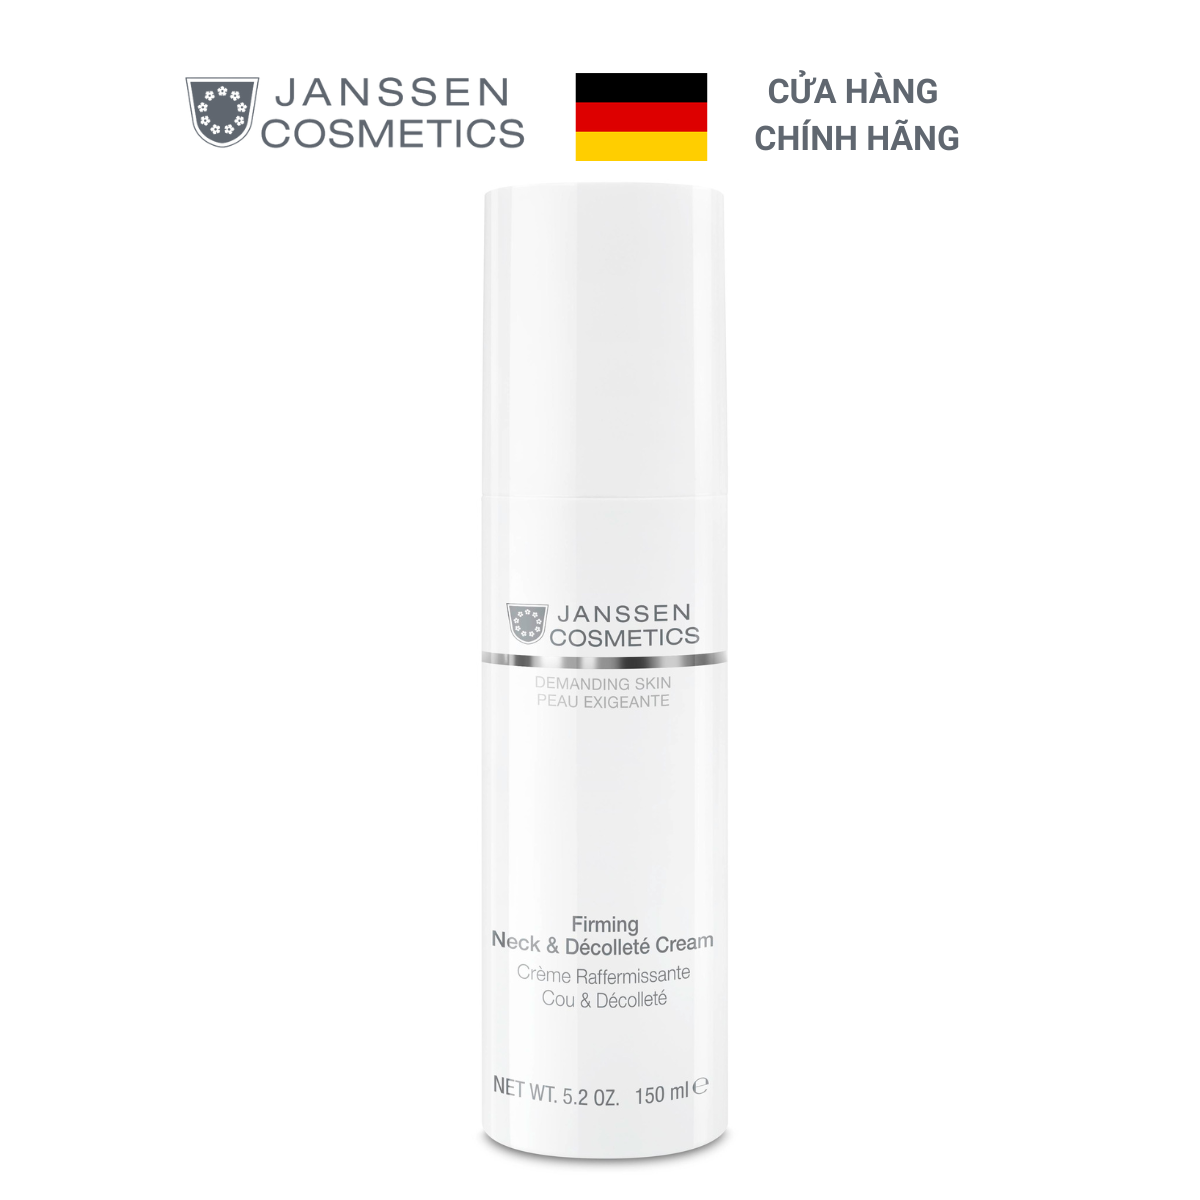  Kem nâng cơ, chống lão hoá da vùng cổ và ngực - Janssen Cosmetics Firming Neck & Decollete Cream 150ml 